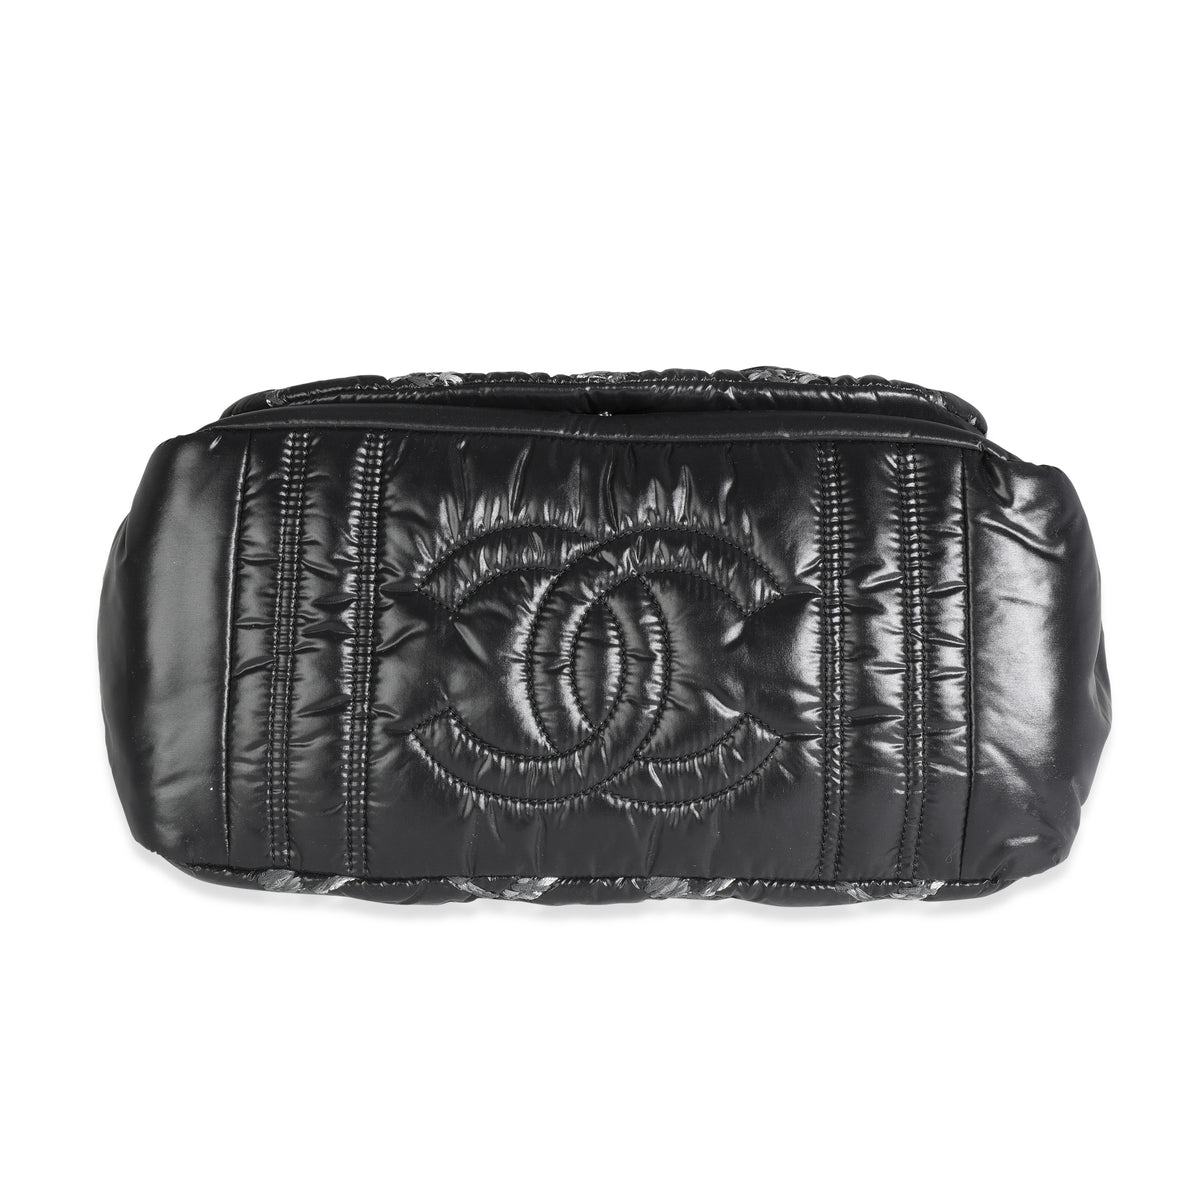 Chanel Paris-Byzance Tweed On Stitch Flap Bag